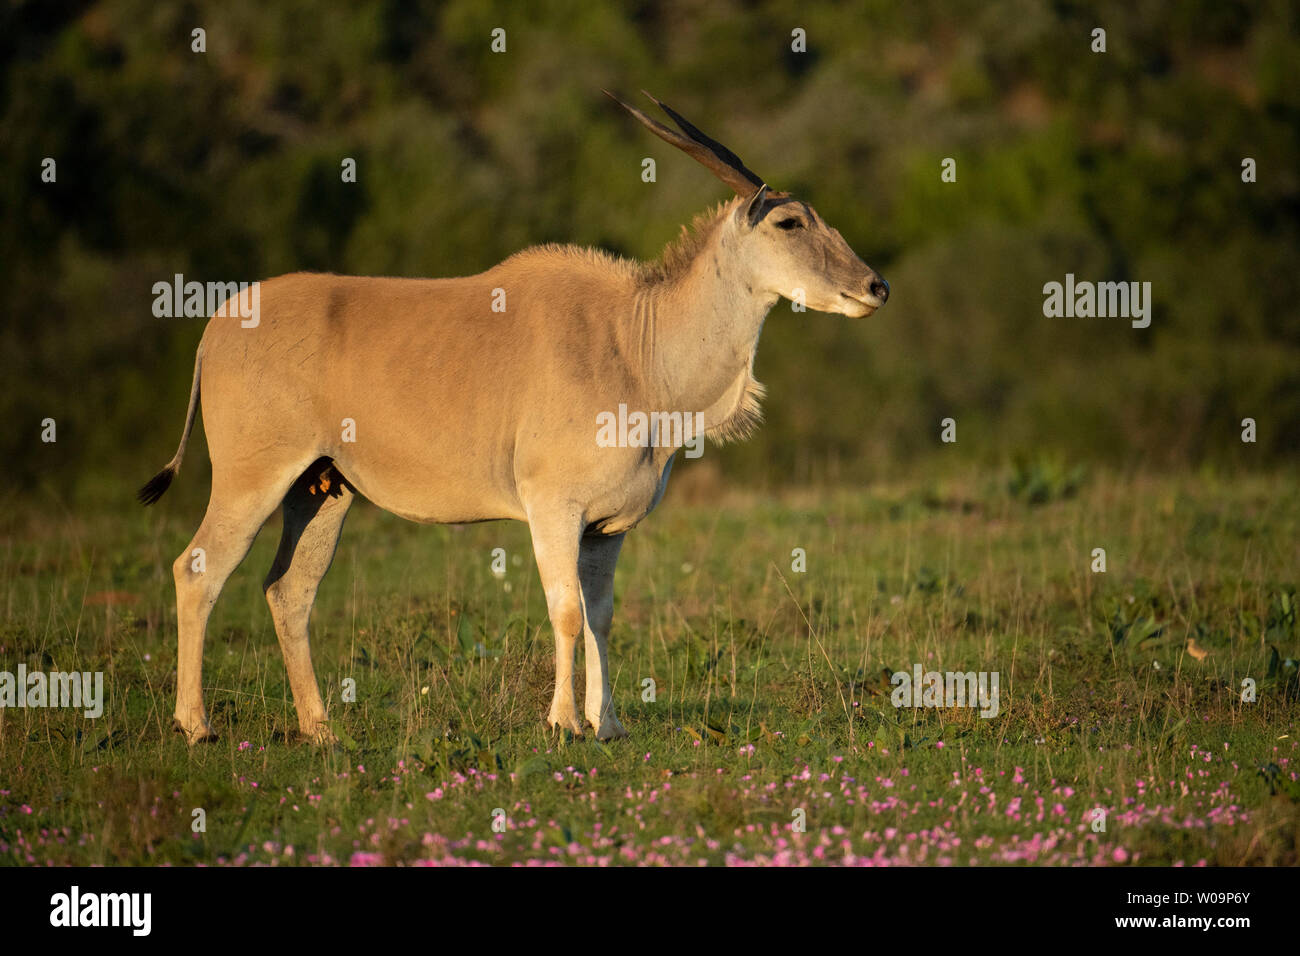 Common eland, Tragelaphus oryx, Amakhala Game Reserve, South Africa Stock Photo